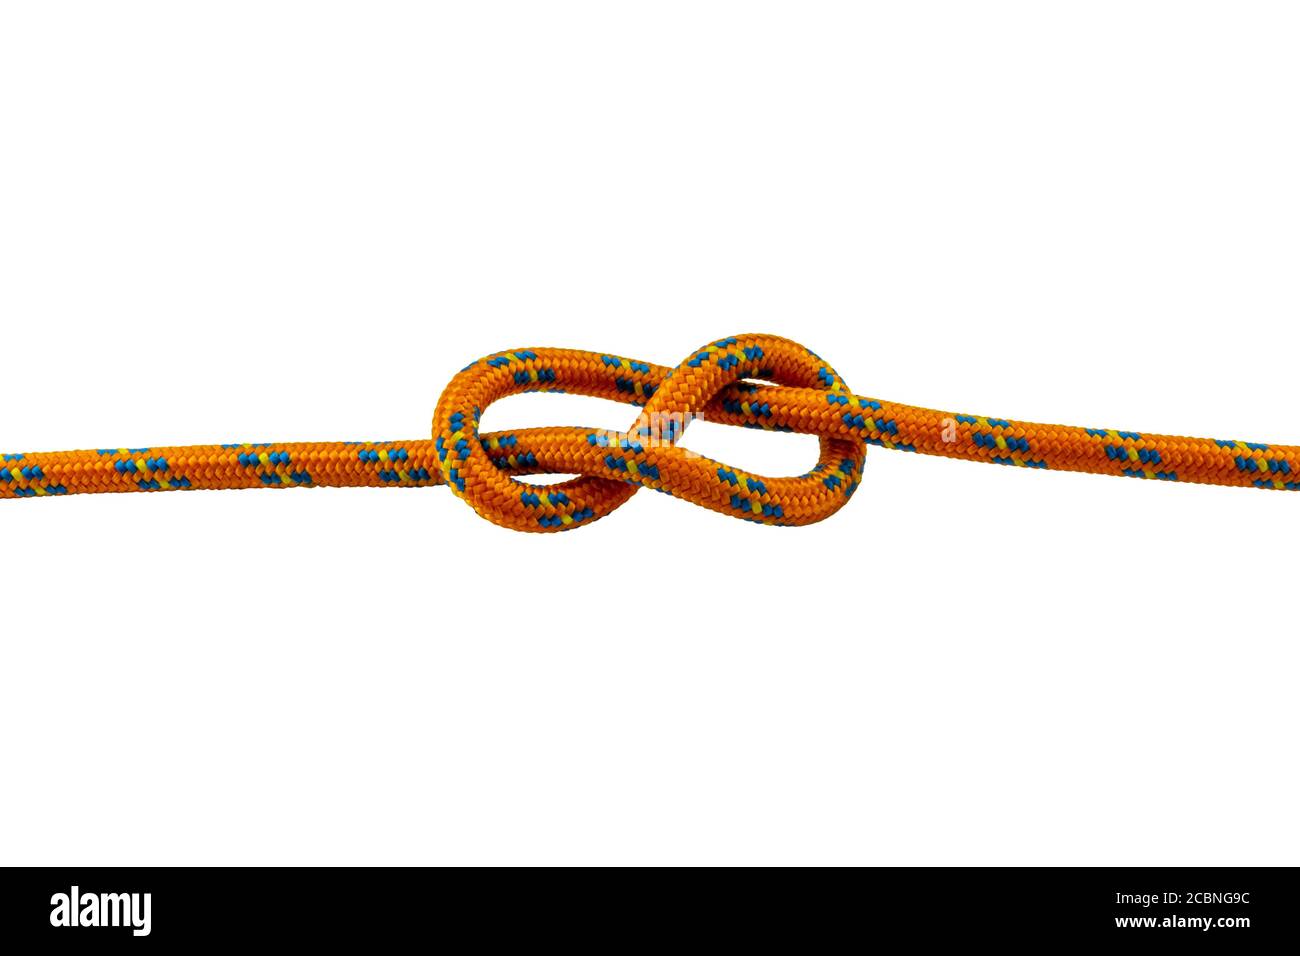 Nœud Savoy exemple de nœud de corde orange avec fond transparent Banque D'Images